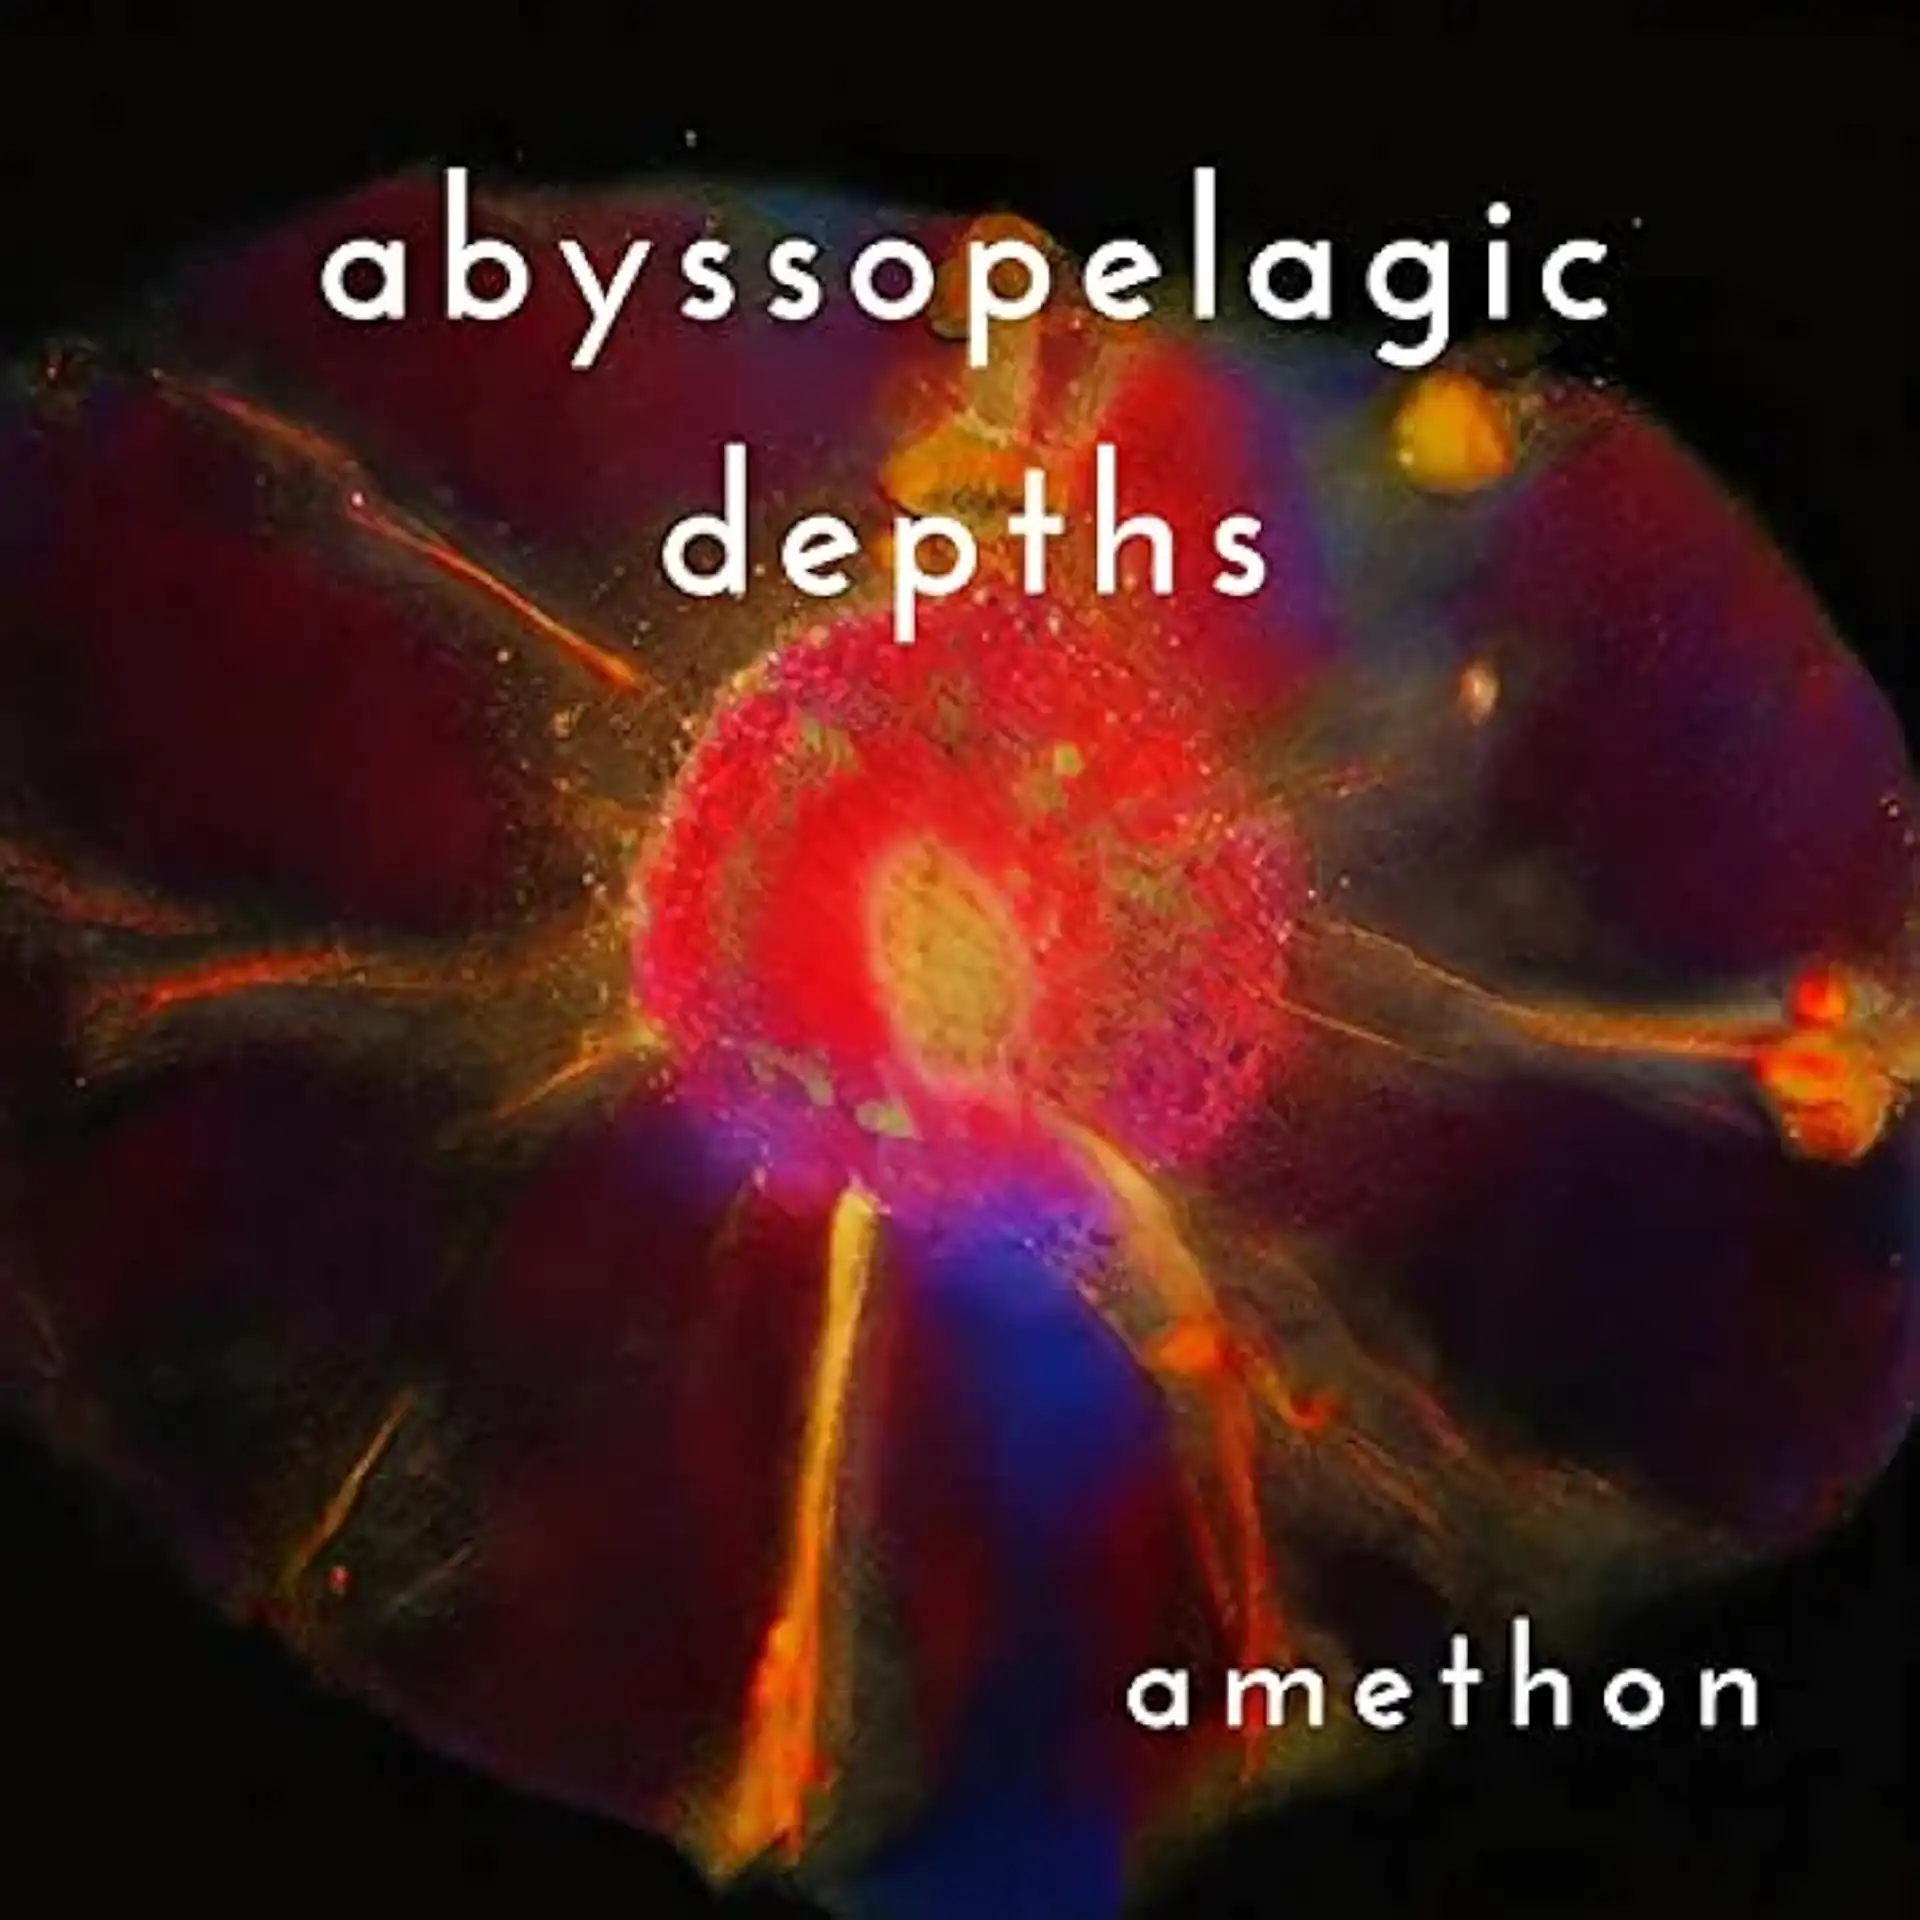 abyssopelagic depths